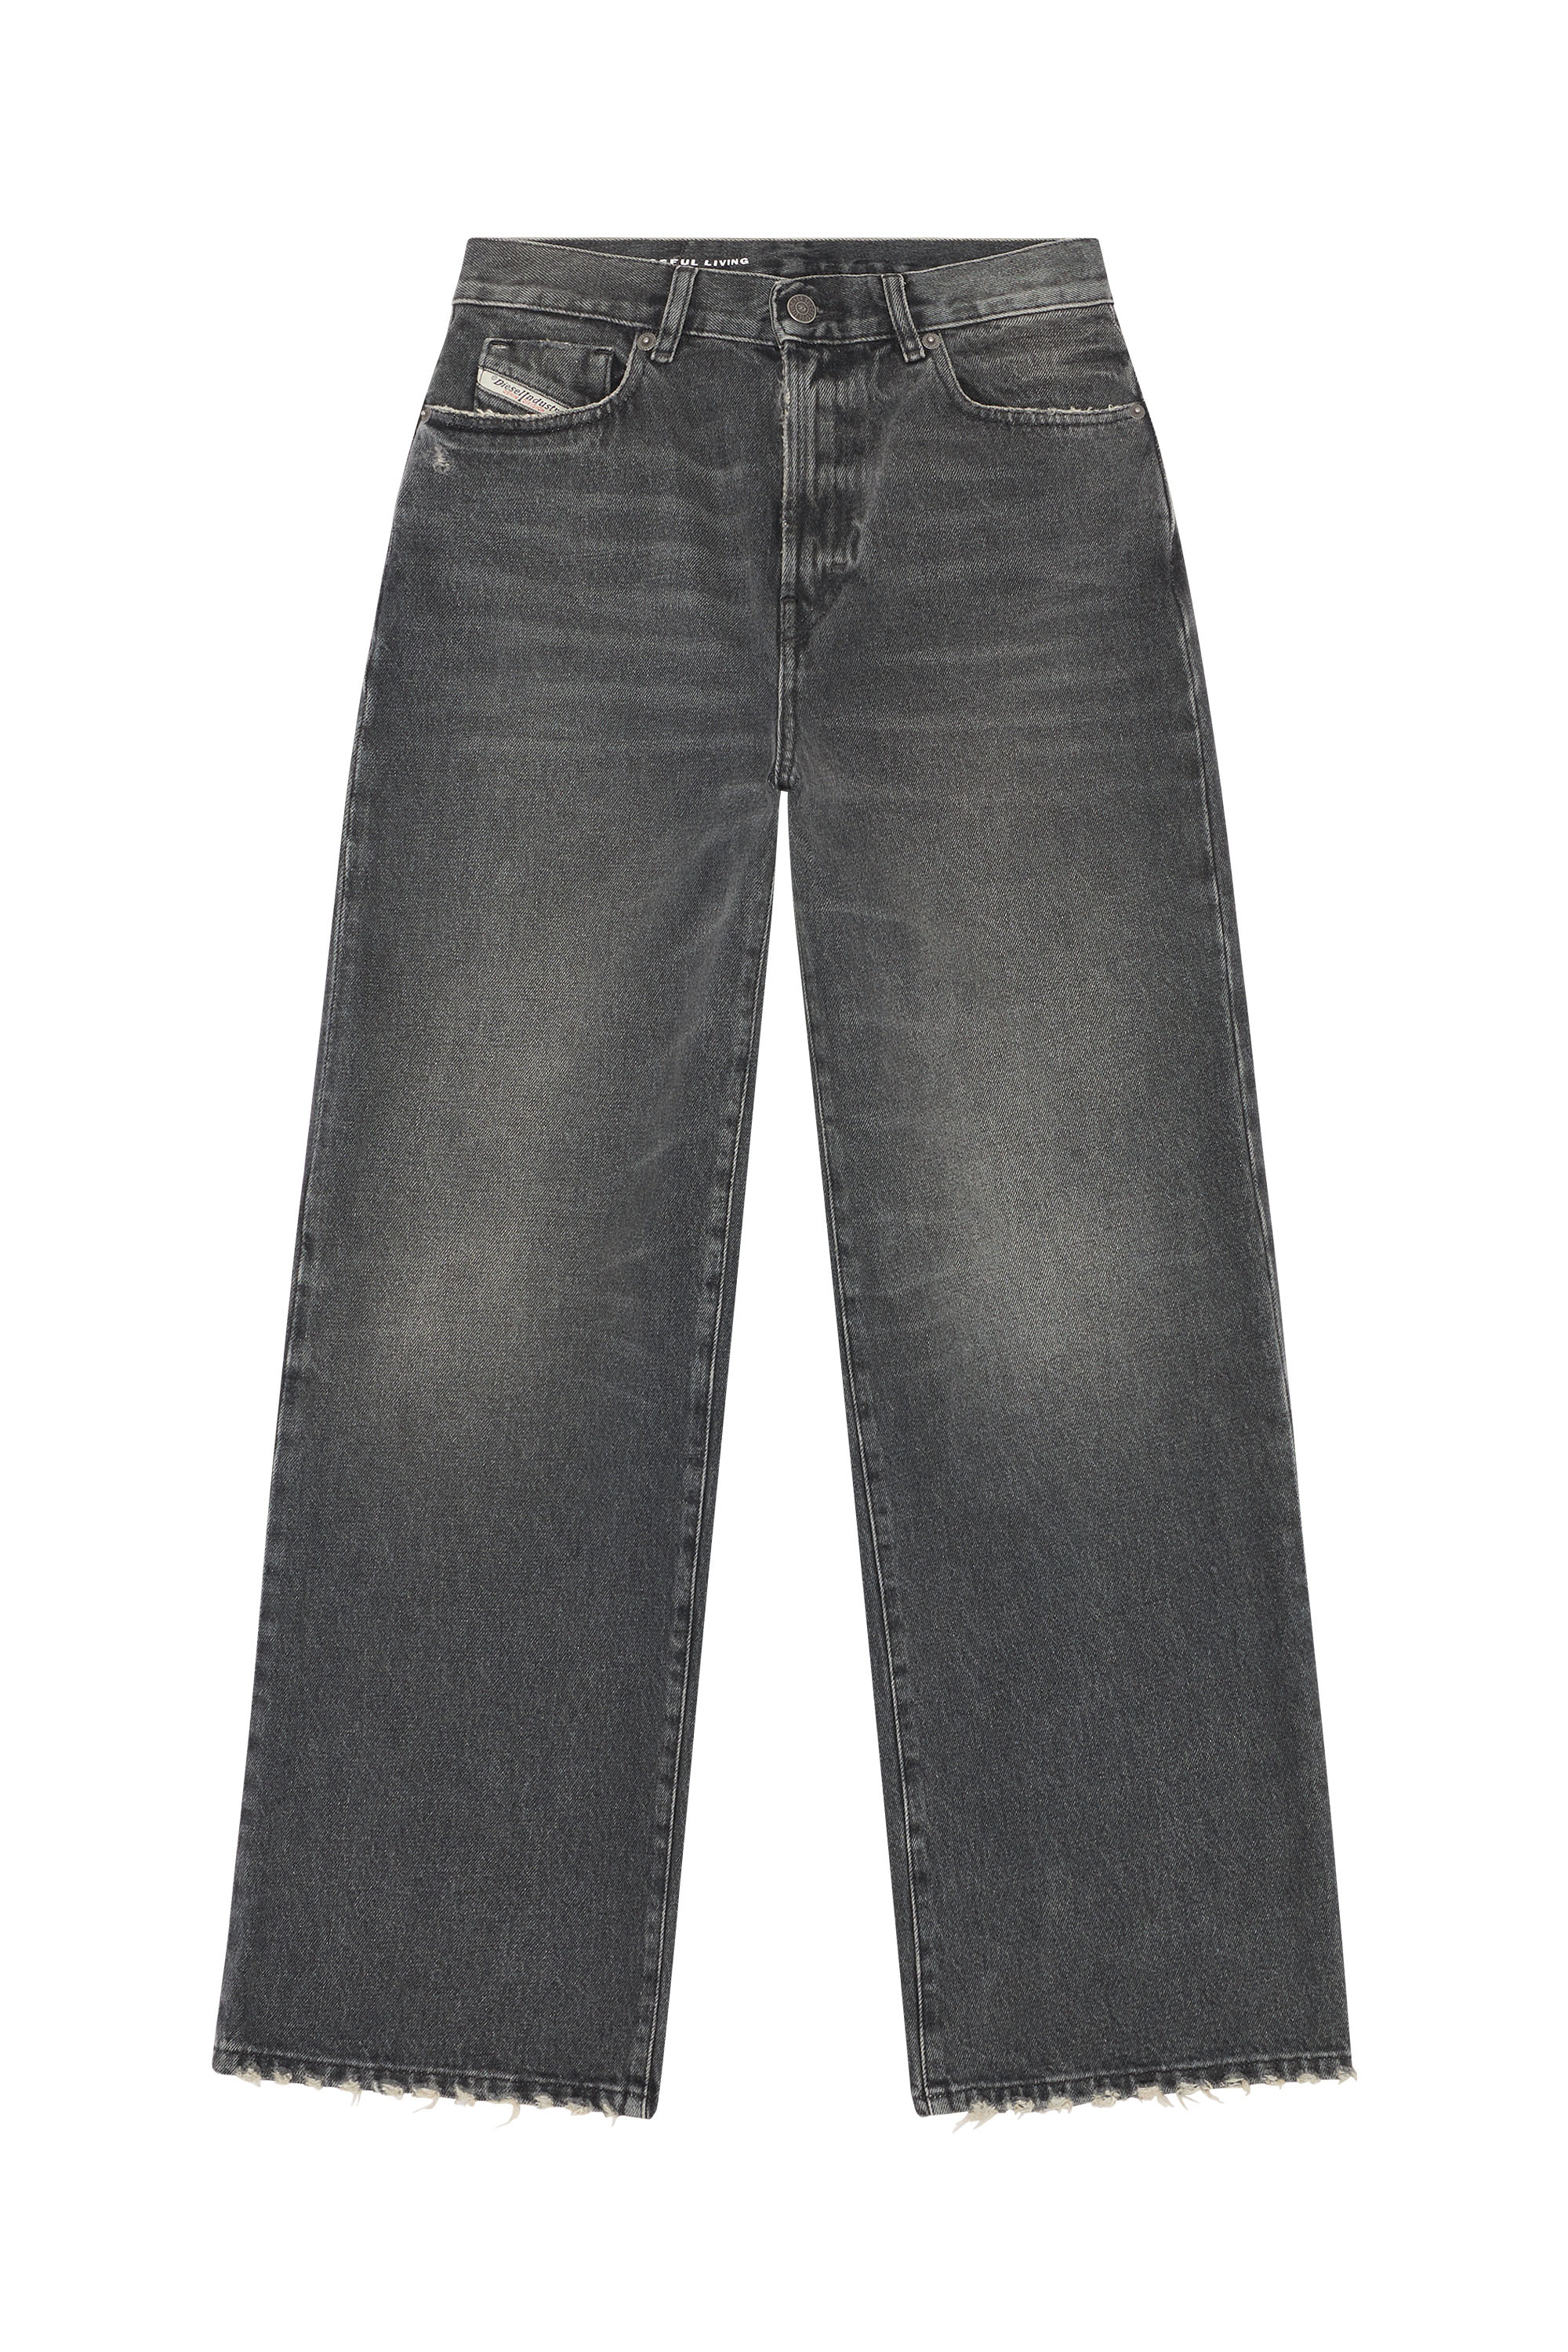 Diesel - Bootcut and Flare Jeans 2000 Widee 007K8, Black/Dark grey - Image 5